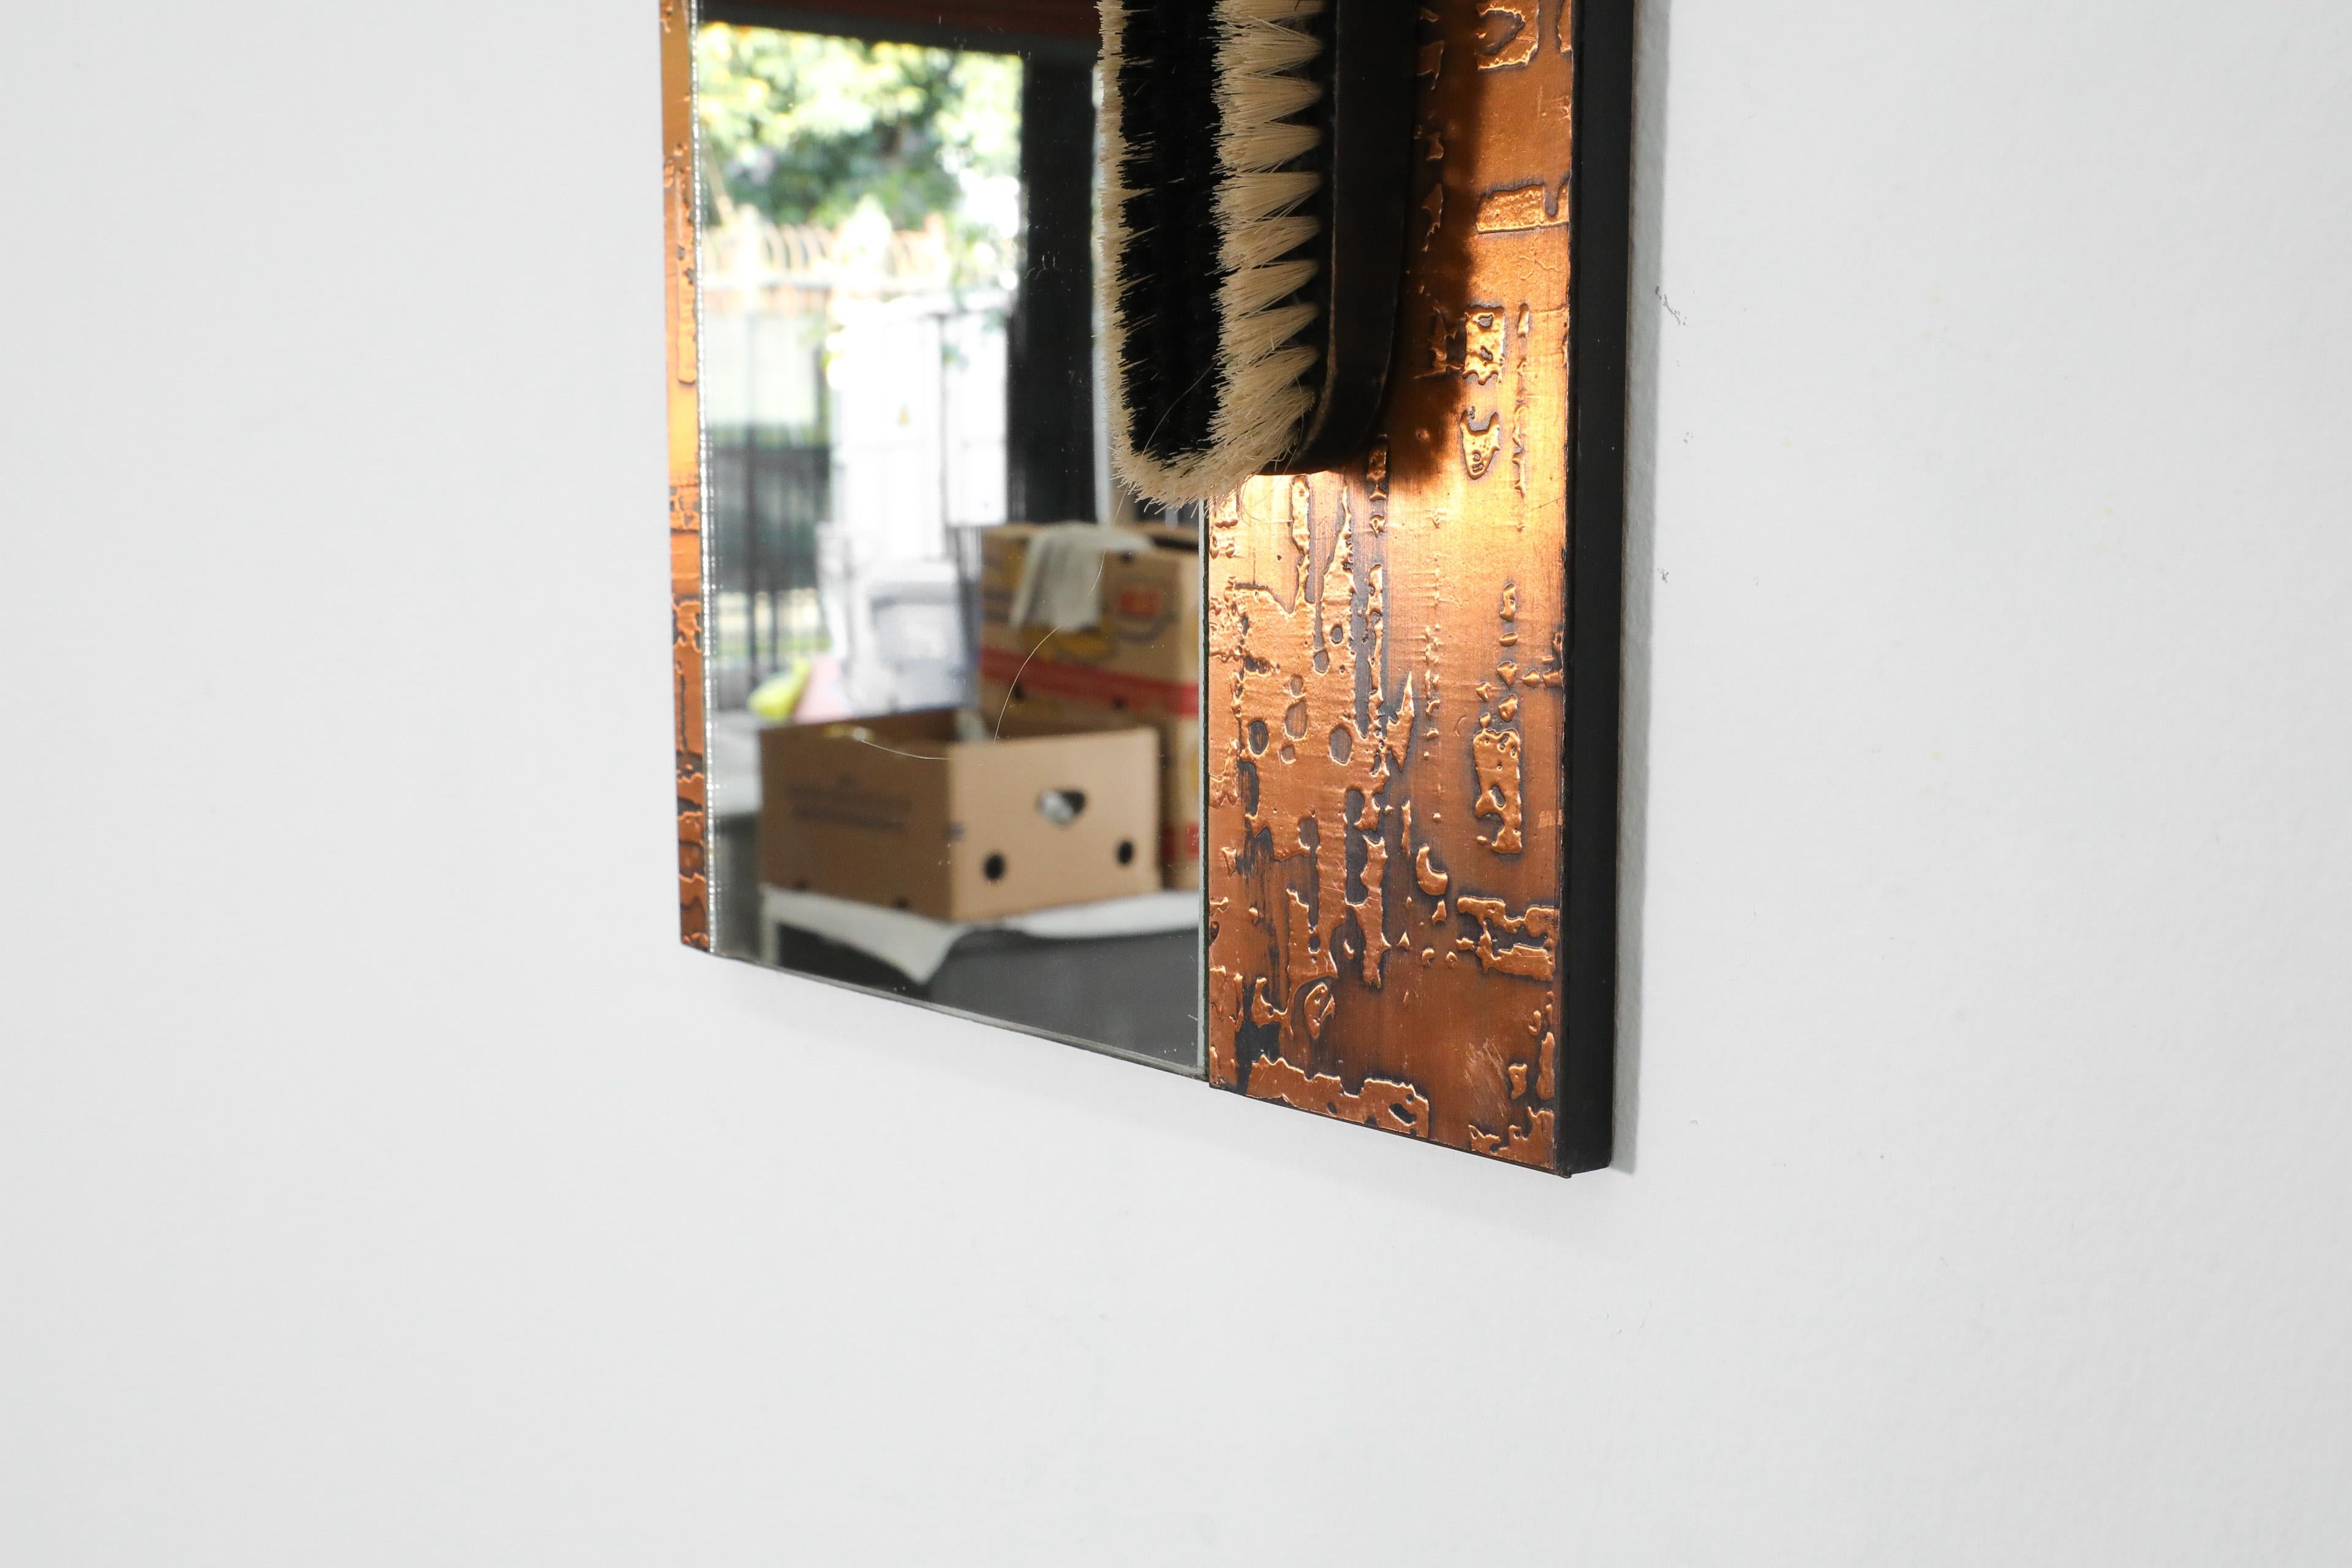 1970s, Santambrogio & De Berti styl Wall Mount Copper Butler's Mirror with Brush For Sale 2